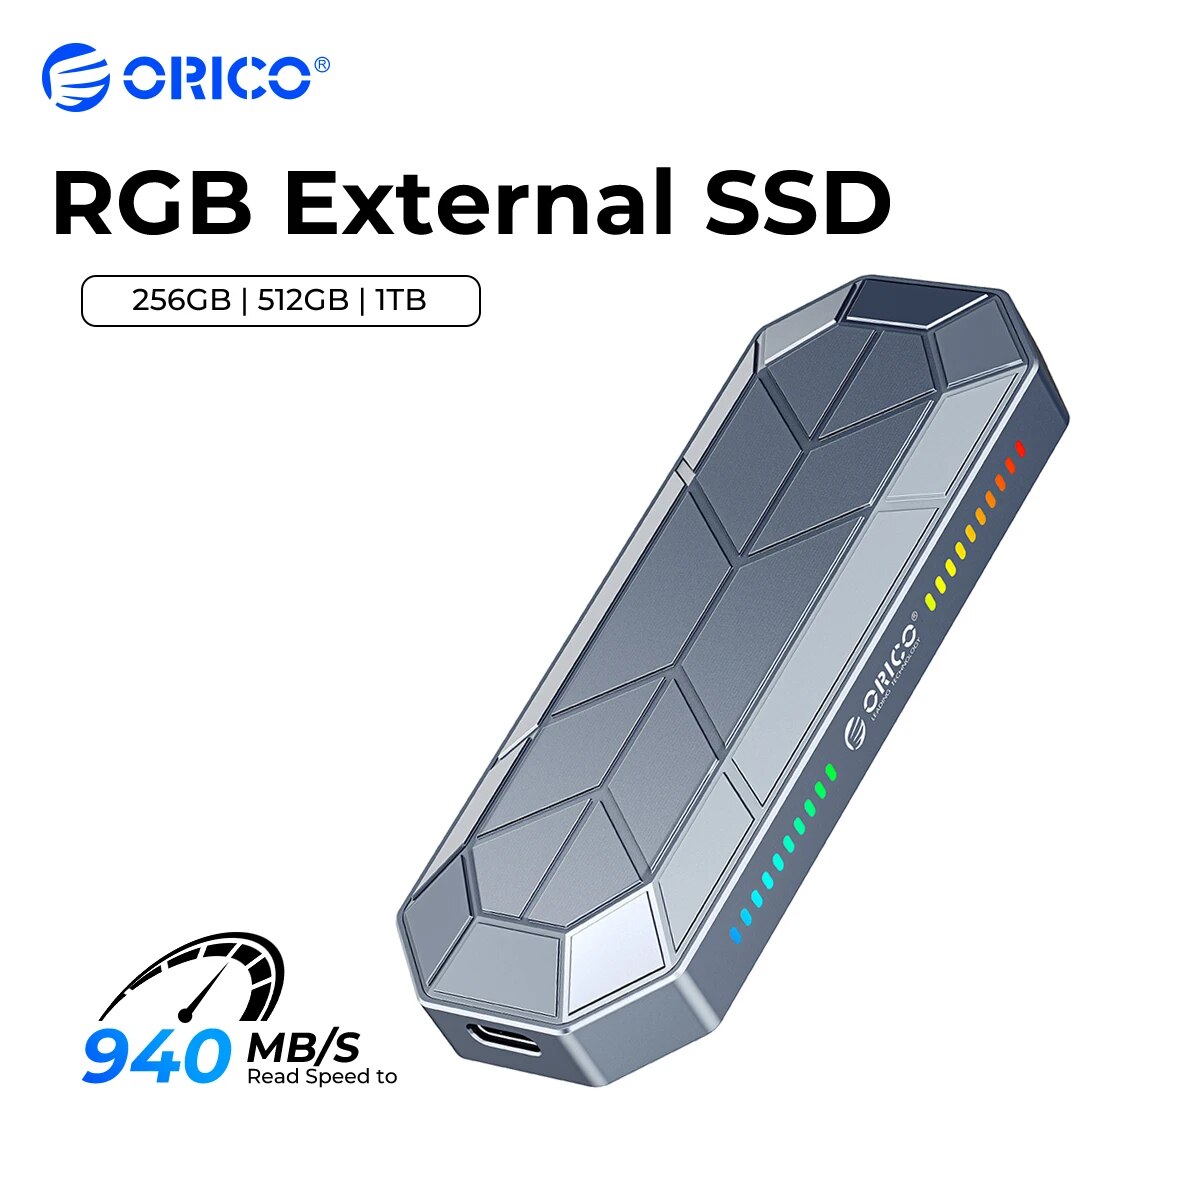 ORICO RGB External SSD 512GB 256GB External Hard drive 1TB SSD USB 3.1